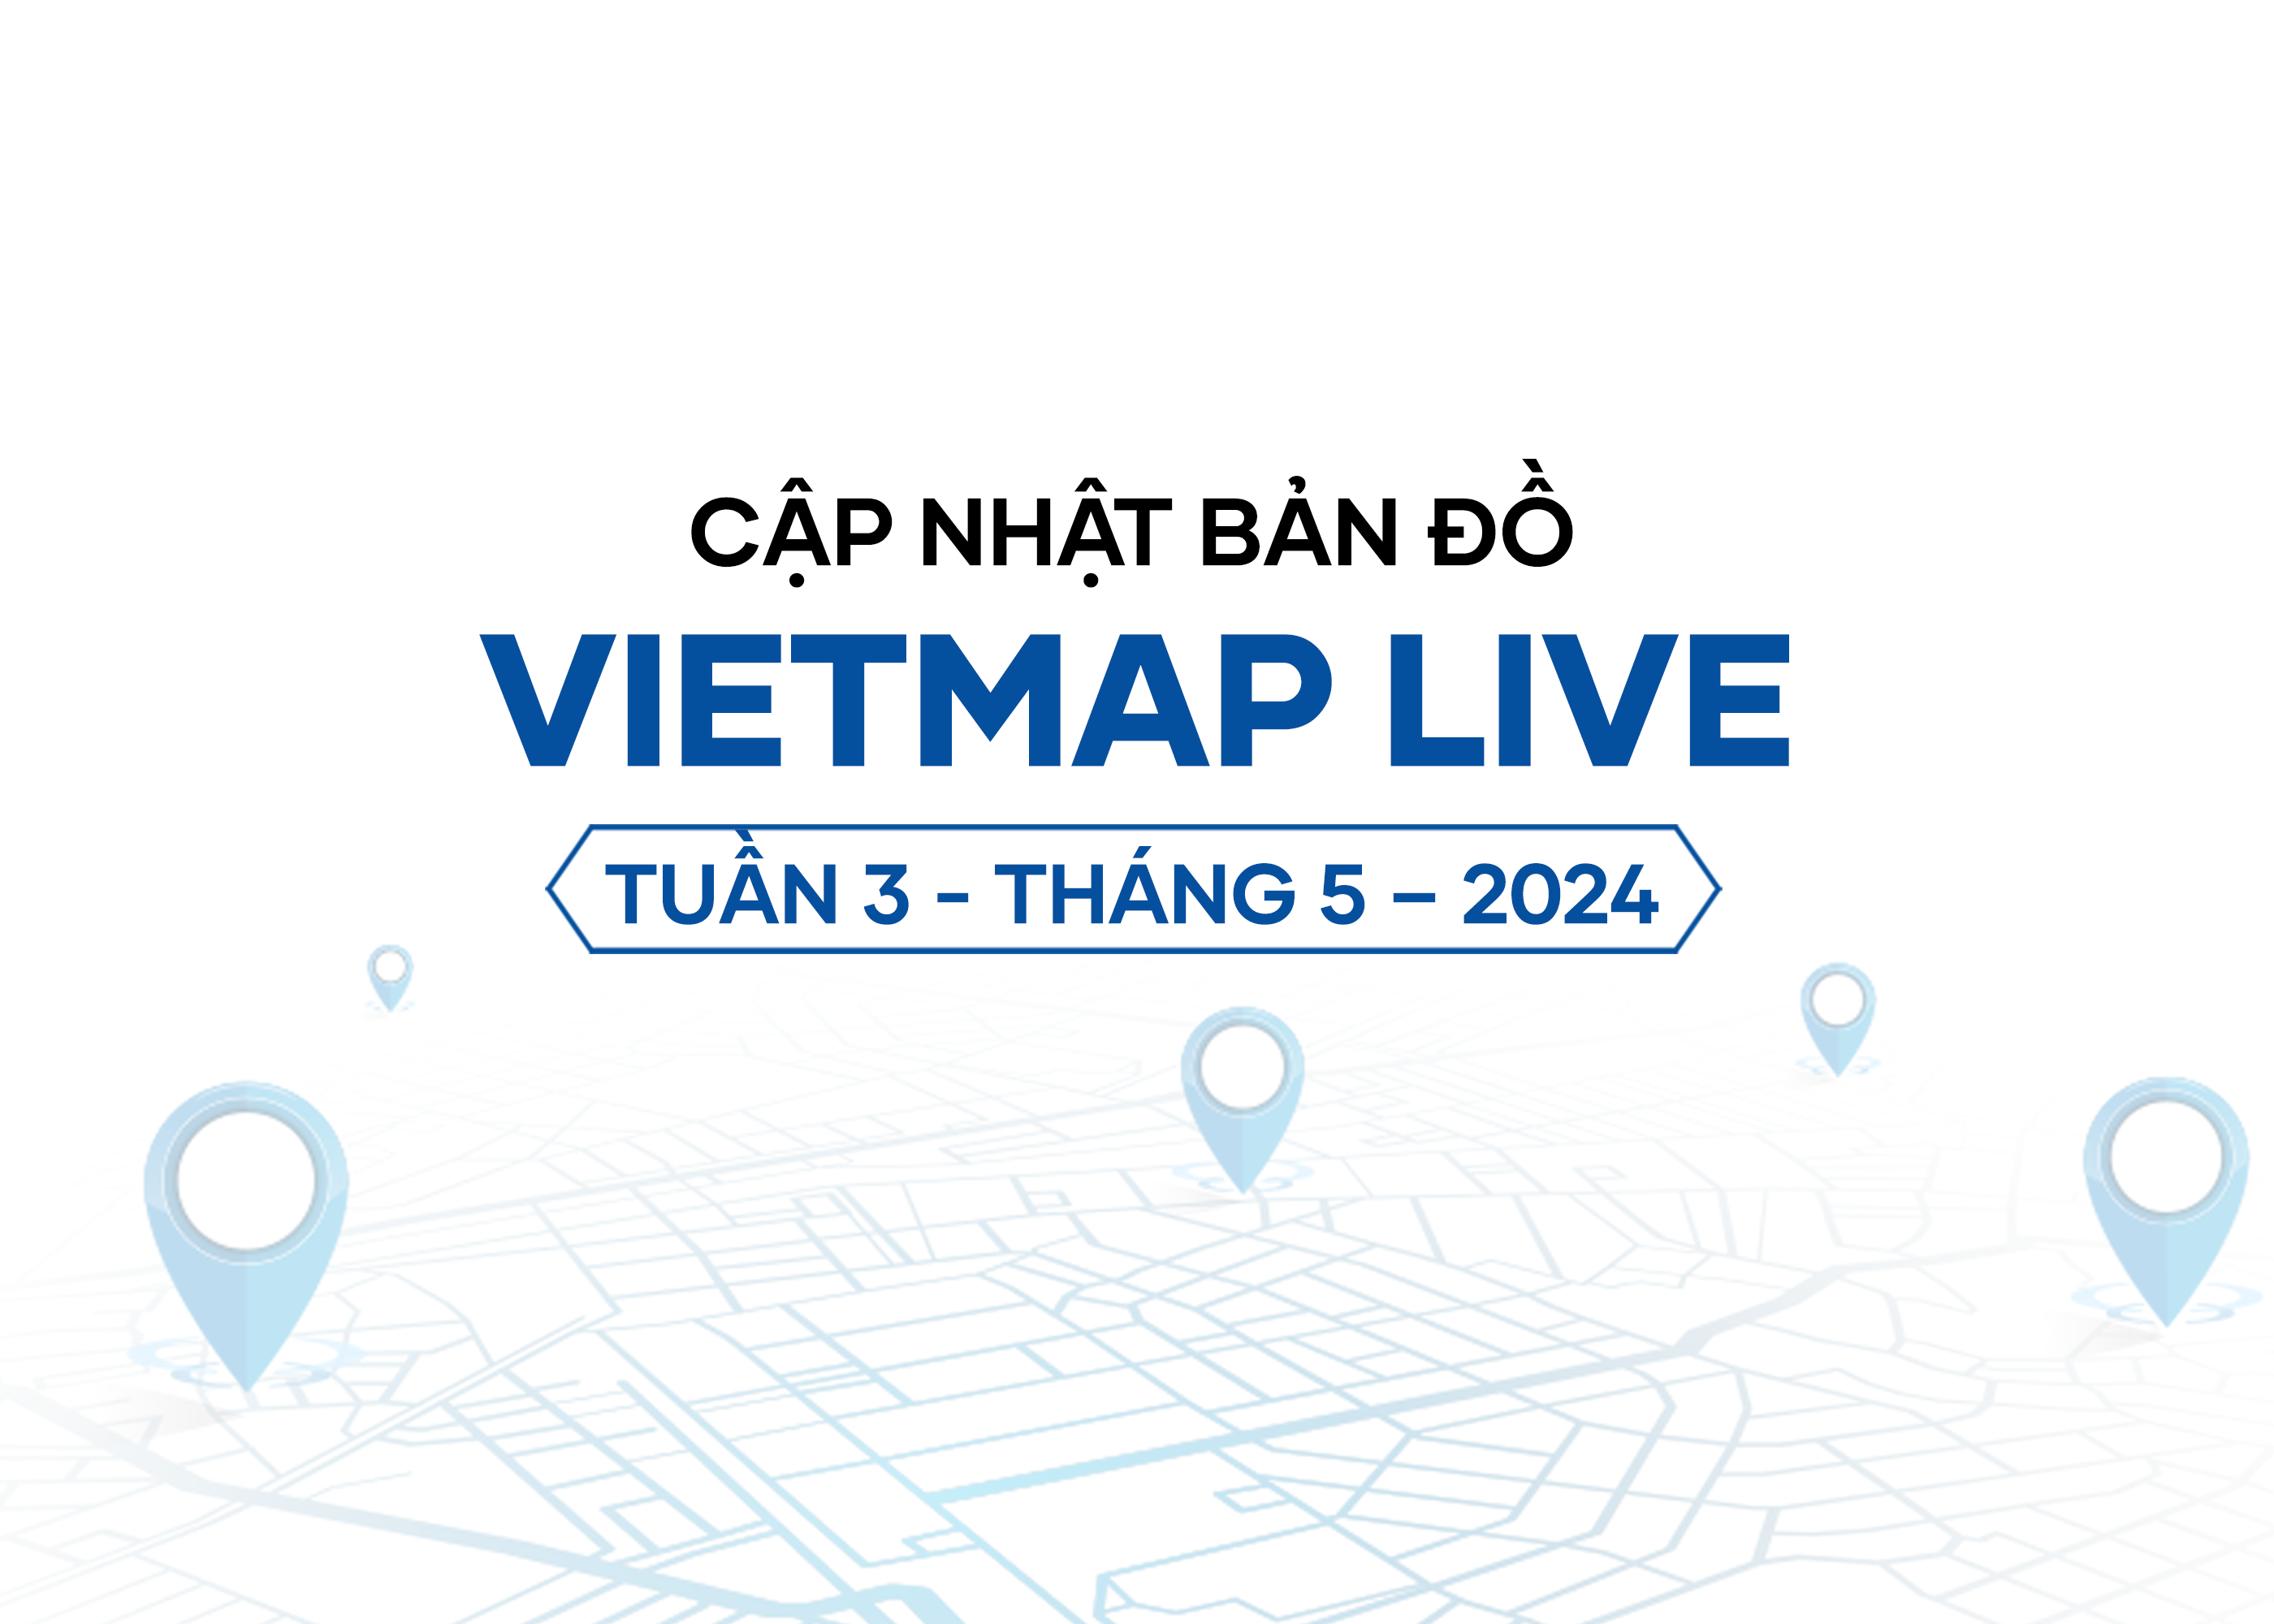 VIETMAP LIVE cập nhật dữ liệu bản đồ Tuần 3 - Tháng 5/2024